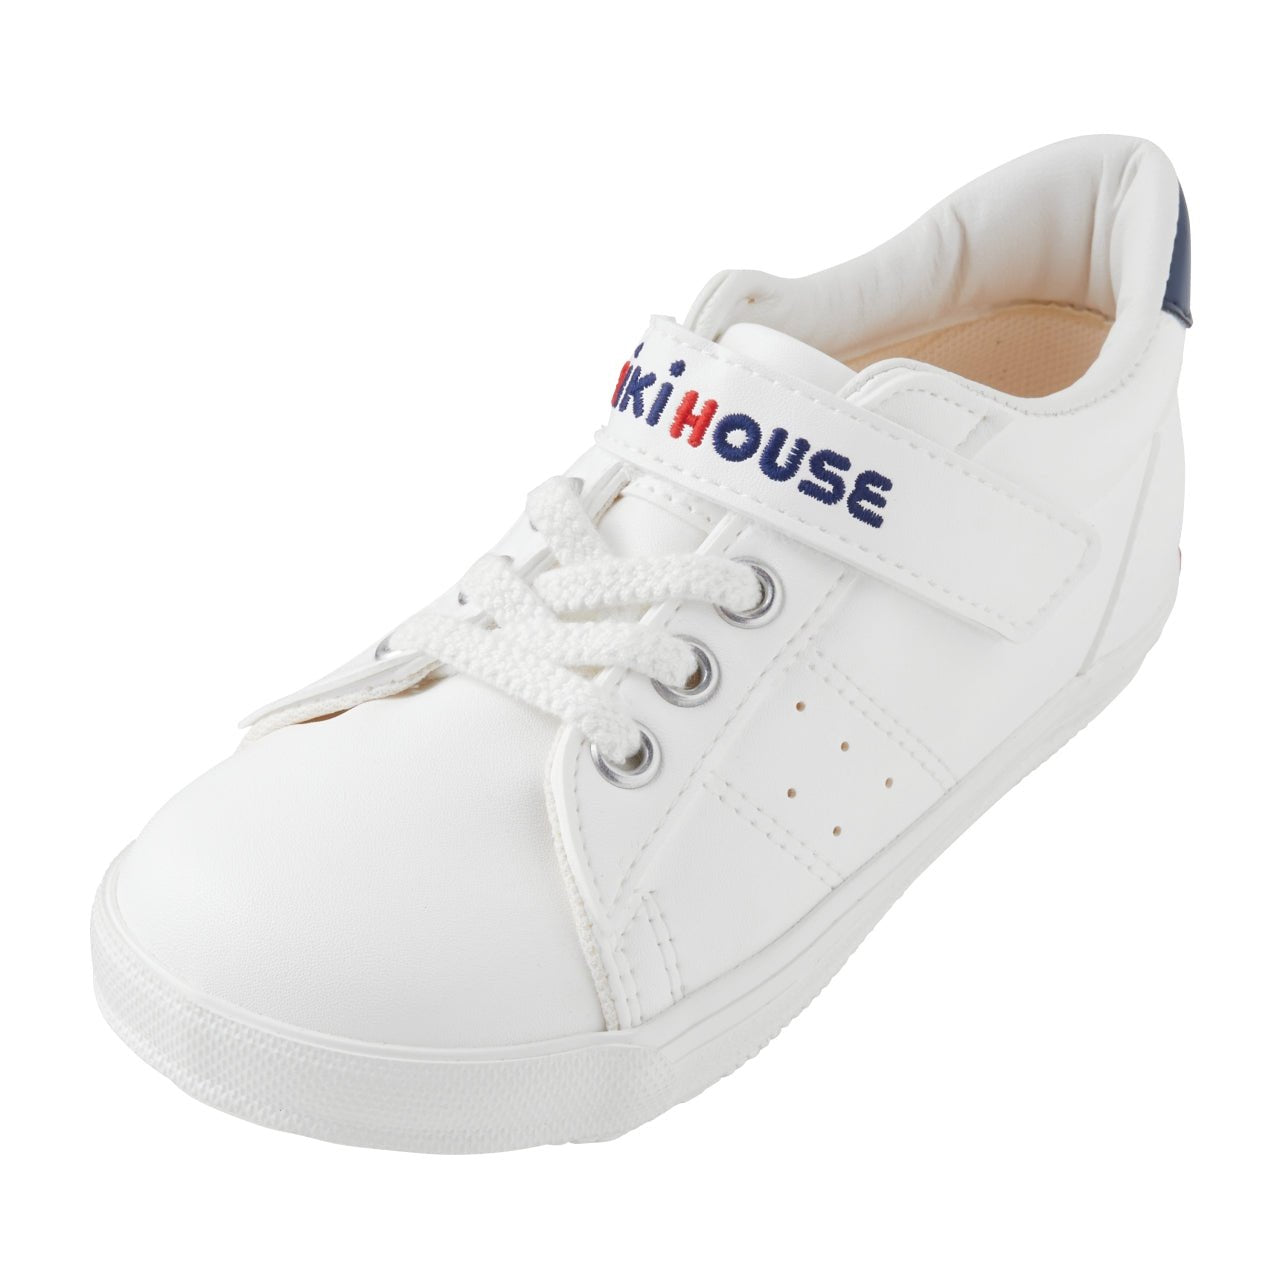 Fresh White Sneakers for Kids - MIKI HOUSE USA